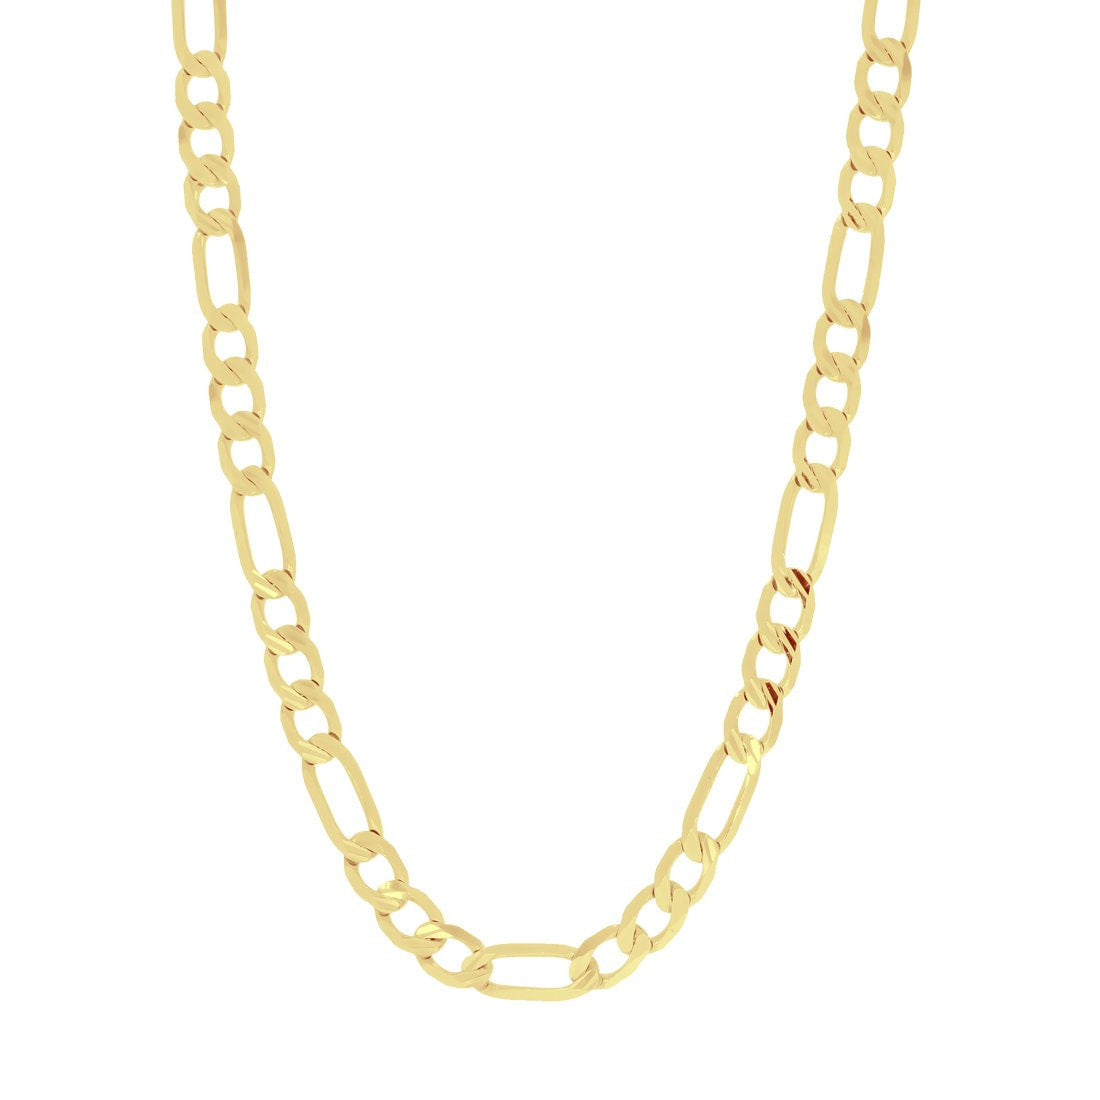 Cadena Oro 10k - Cartie Diamantada 60 cm, Ancho 6 mm